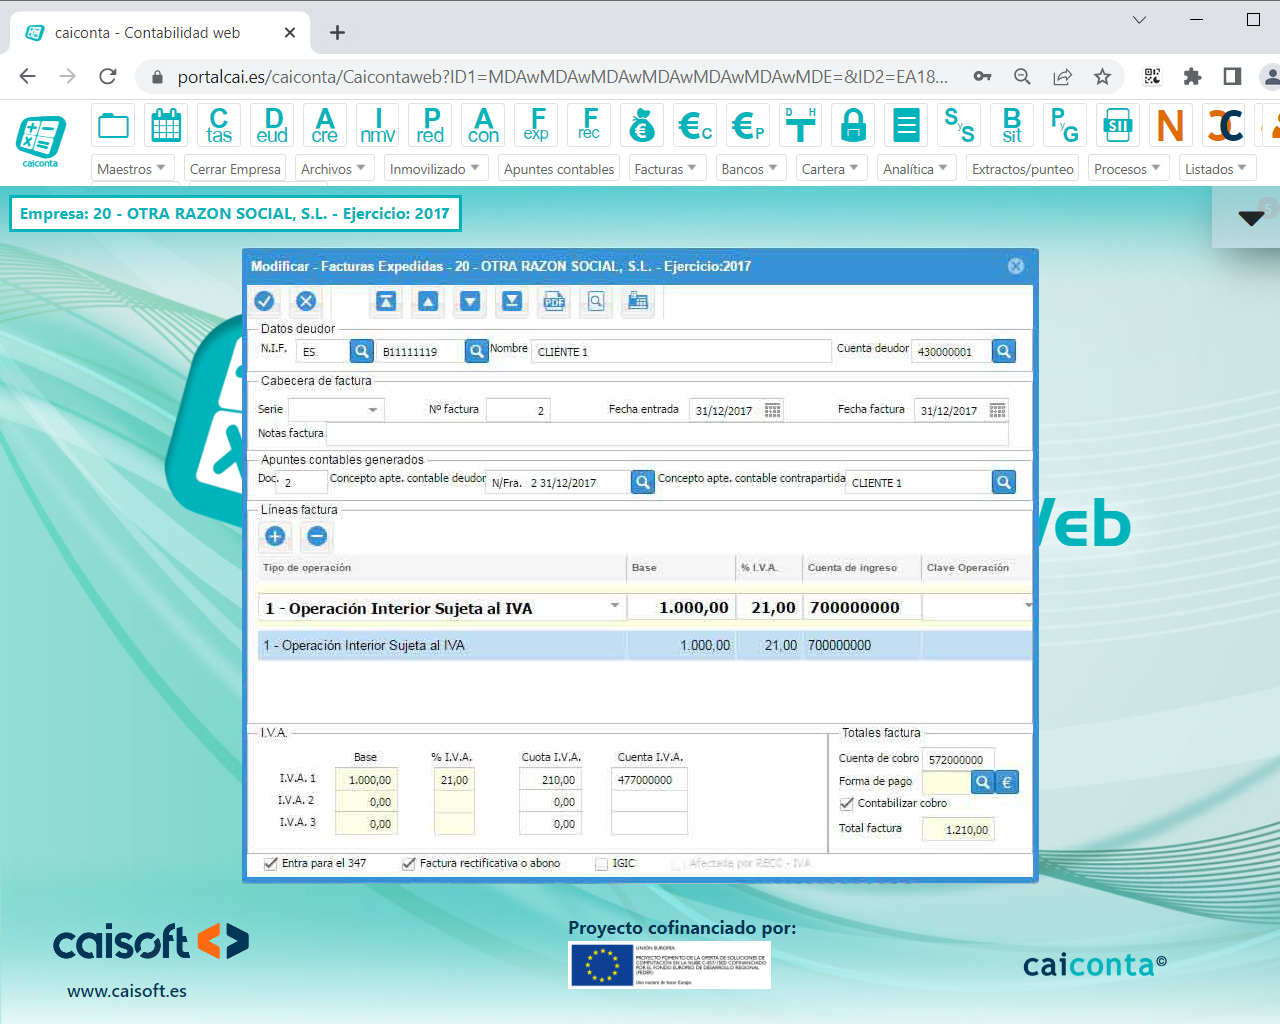 Registro de facturas expedidas en el software de contabilidad web CAICONTA